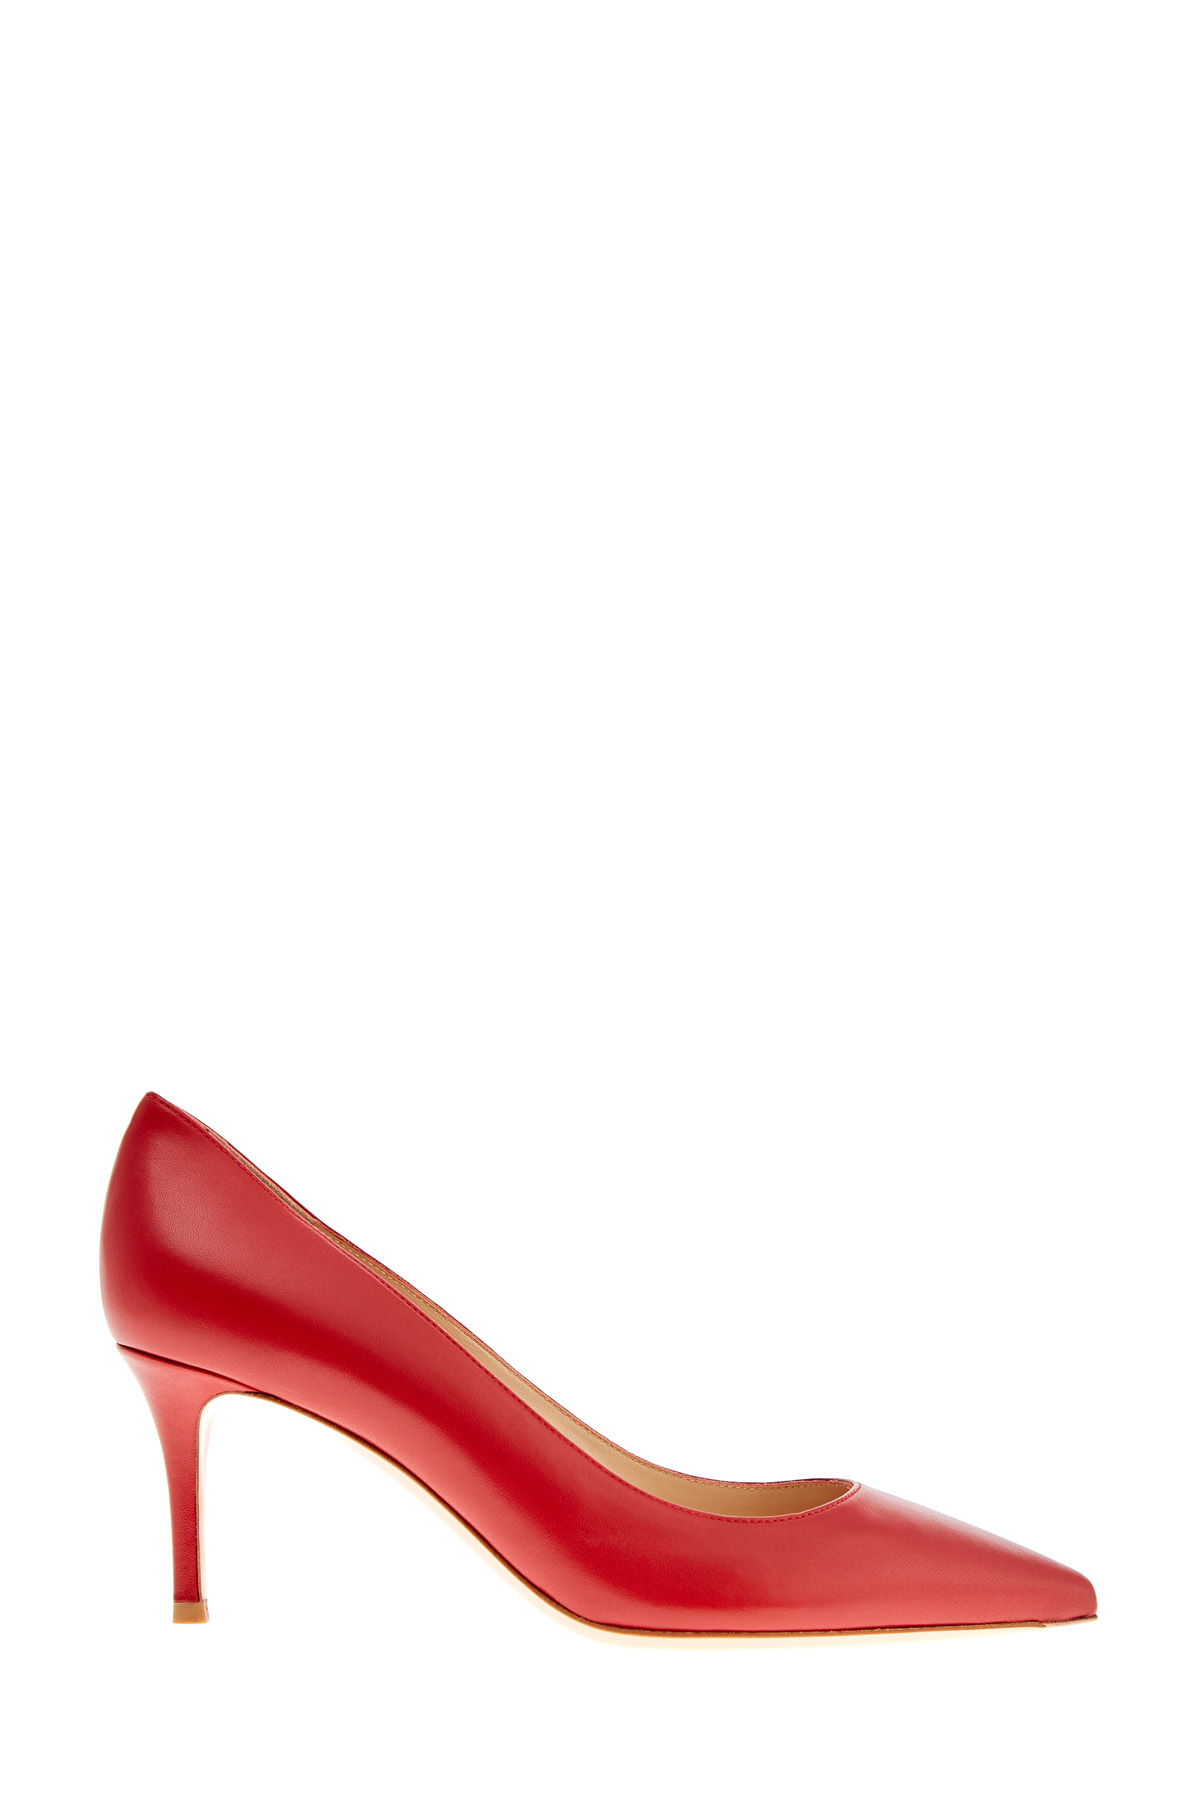 Алые туфли-лодочки из телячьей кожи GIANVITO ROSSI, цвет красный, размер 37.5 - фото 1